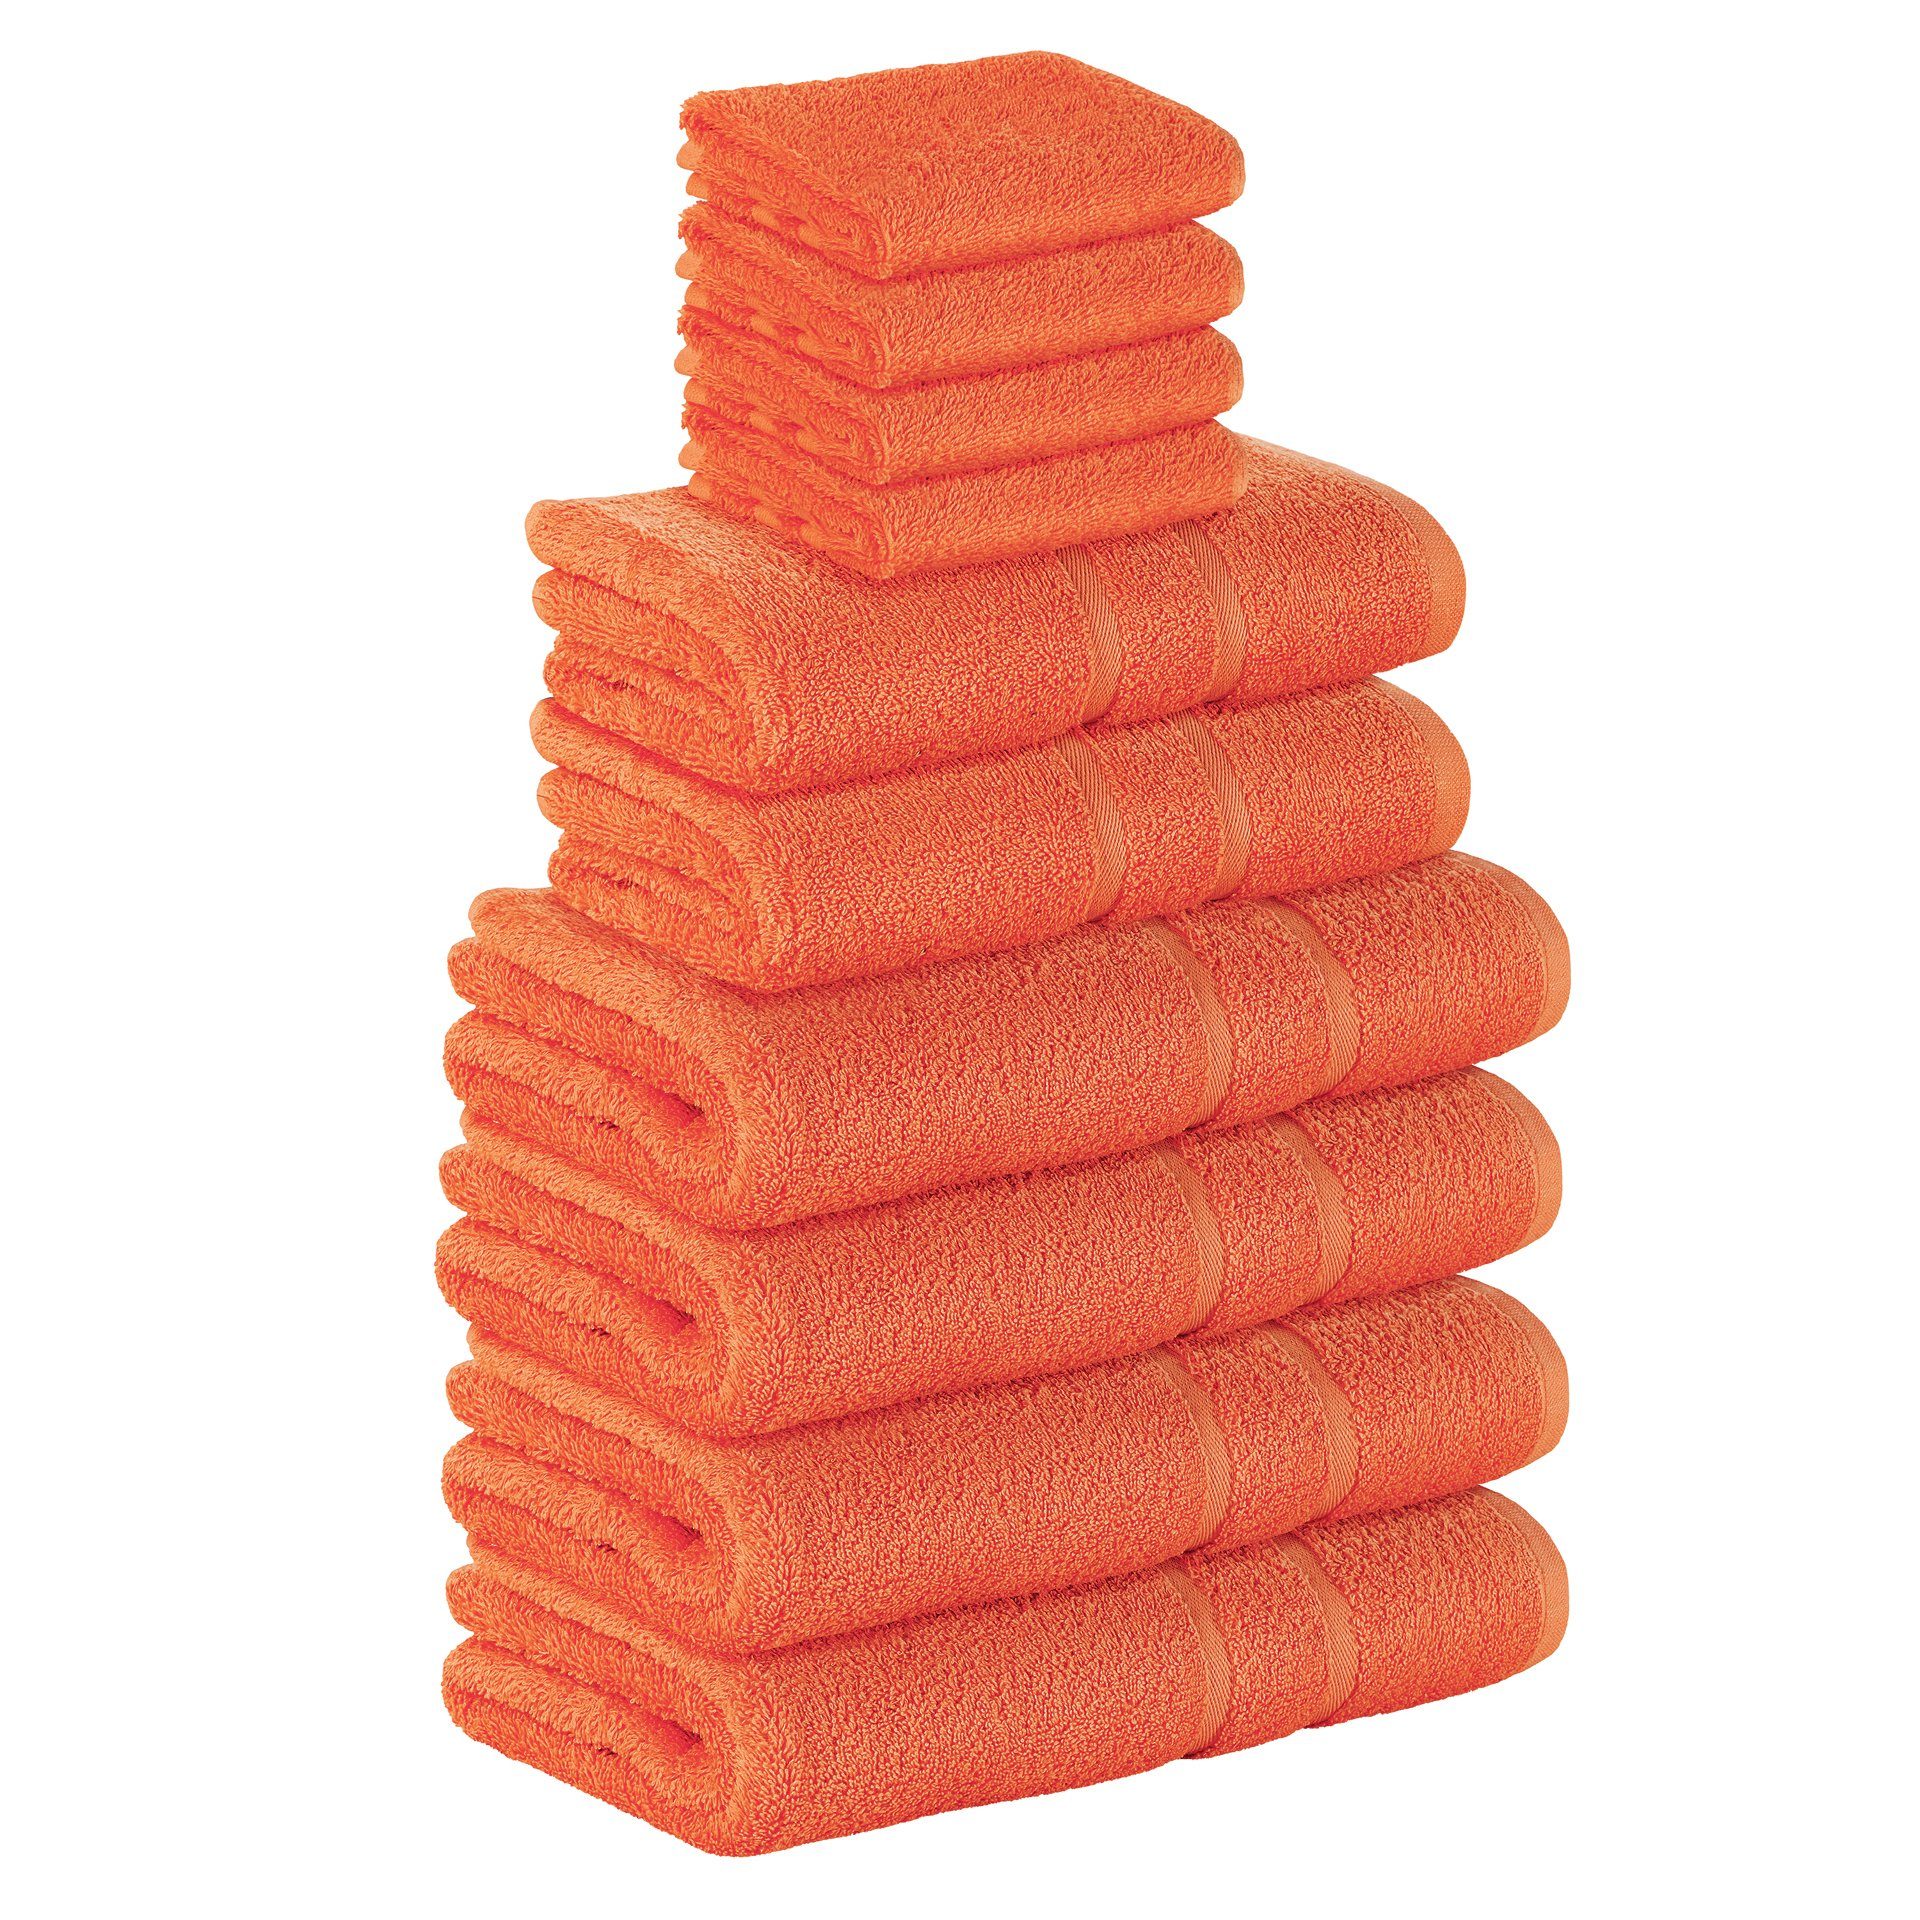 StickandShine Handtuch Set 4x Gästehandtuch 2x Handtücher 4x Duschtücher als SET in verschiedenen Farben (10 Teilig) 100% Baumwolle 500 GSM Frottee 10er Handtuch Pack, 100% Baumwolle 500 GSM Orange